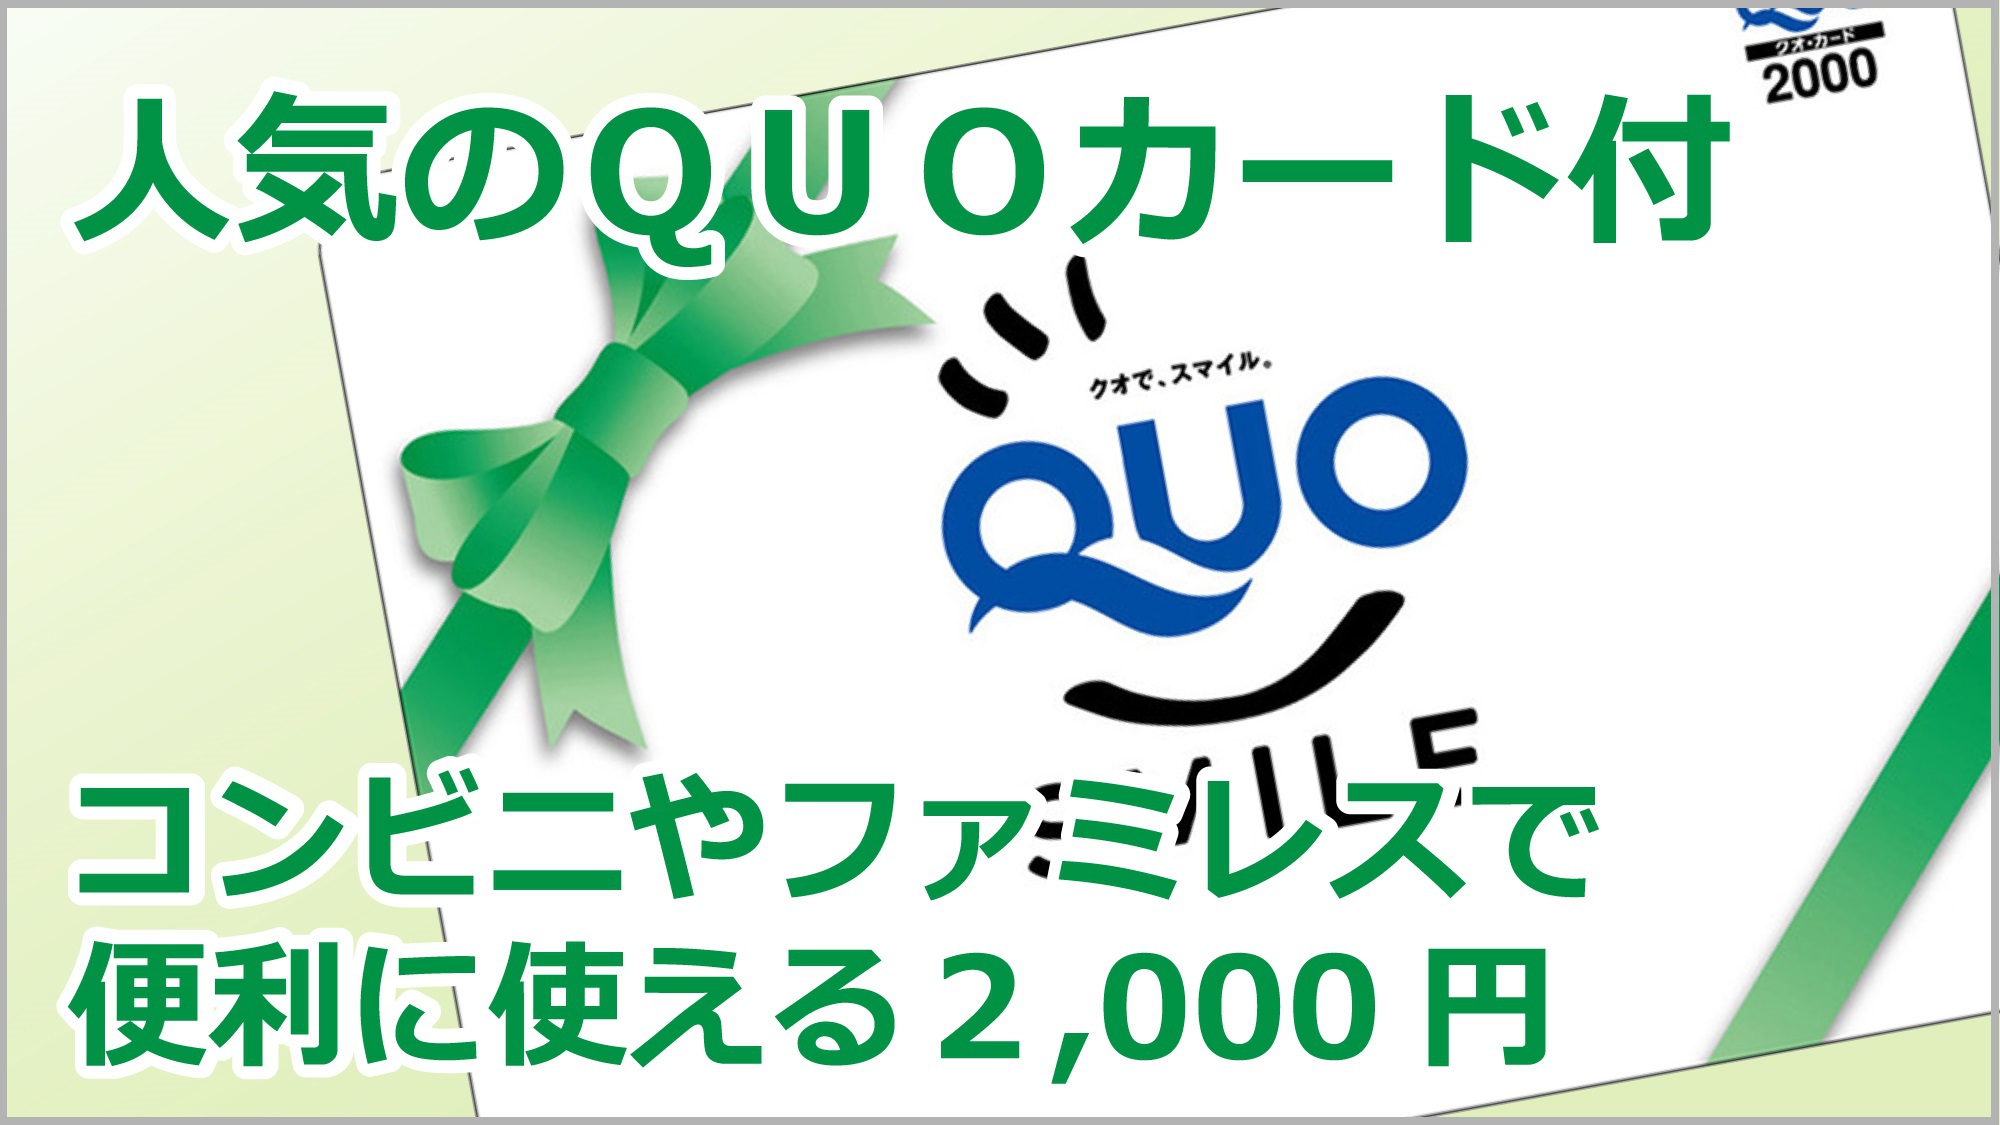 QUO2000